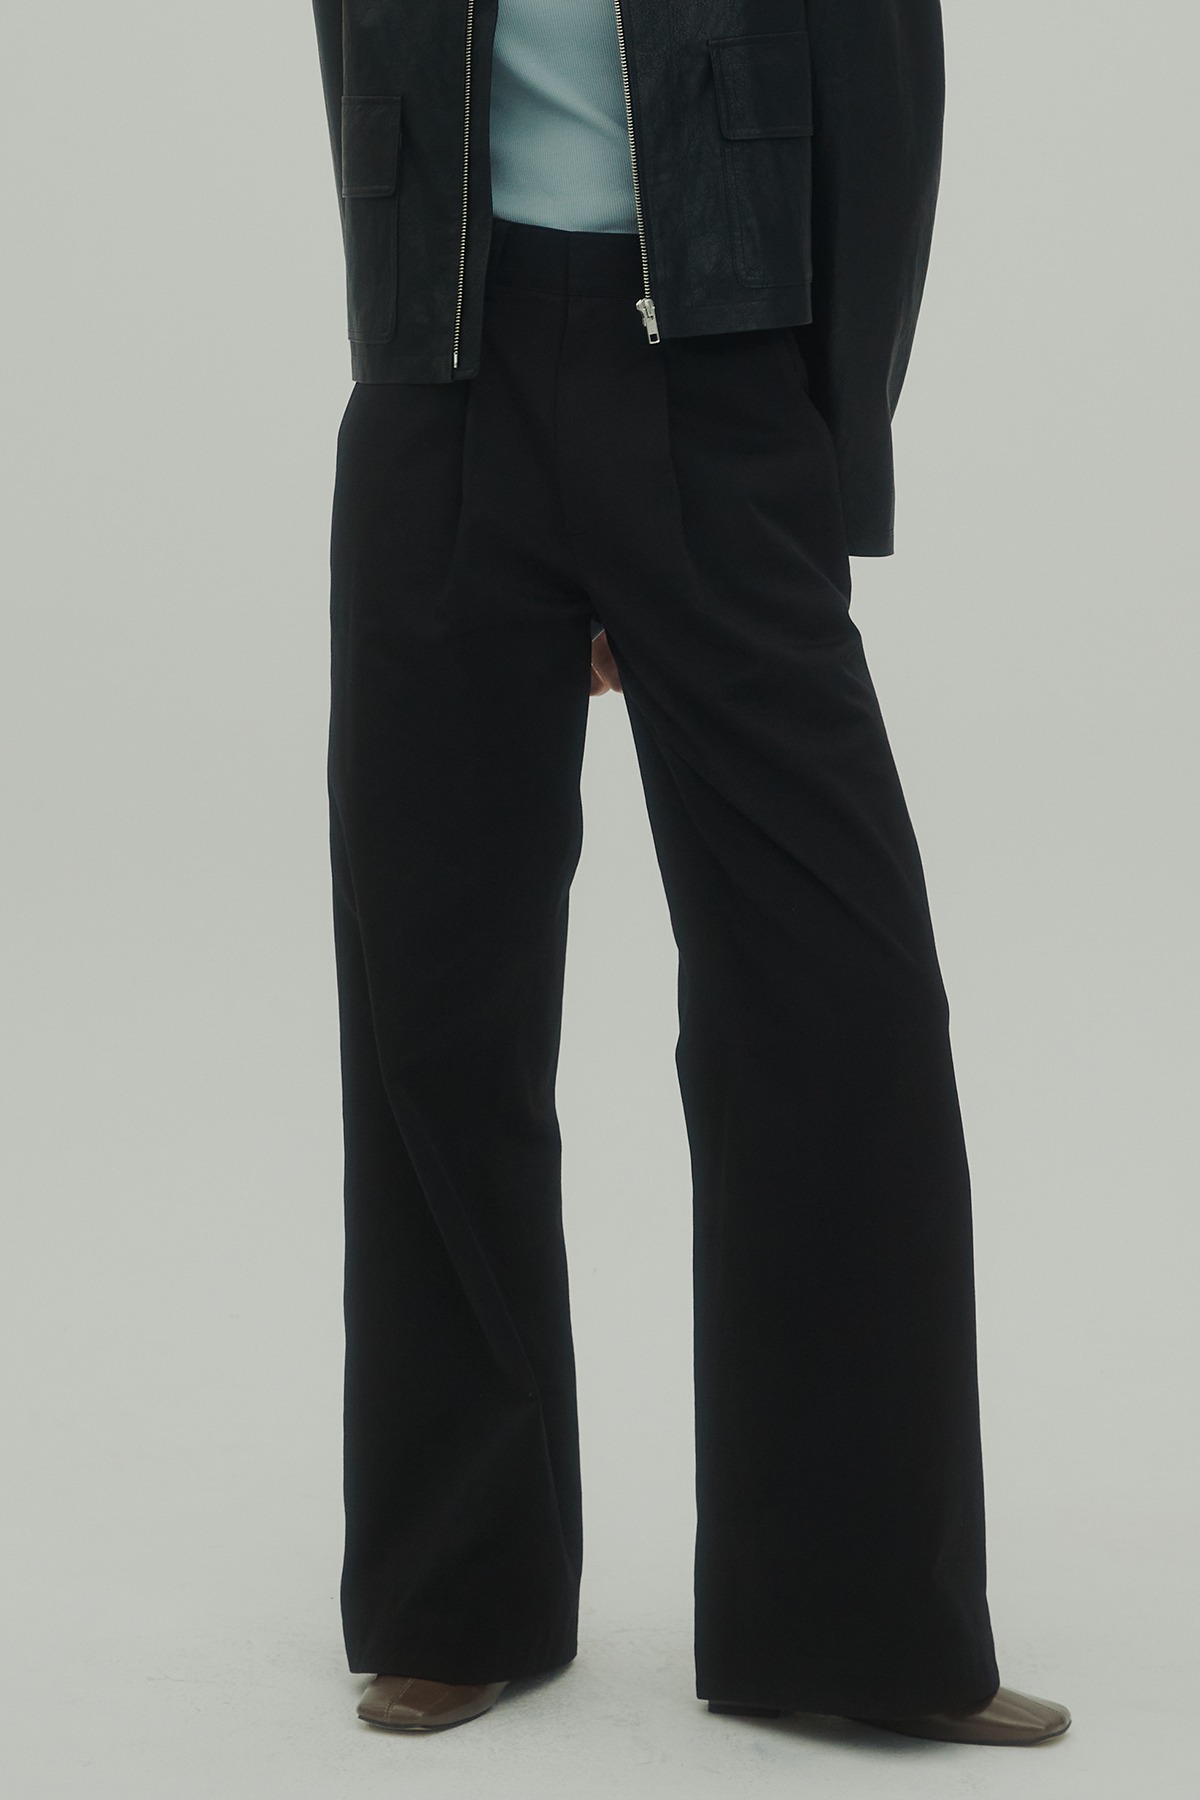 Wide silhouette black cotton pants(black)